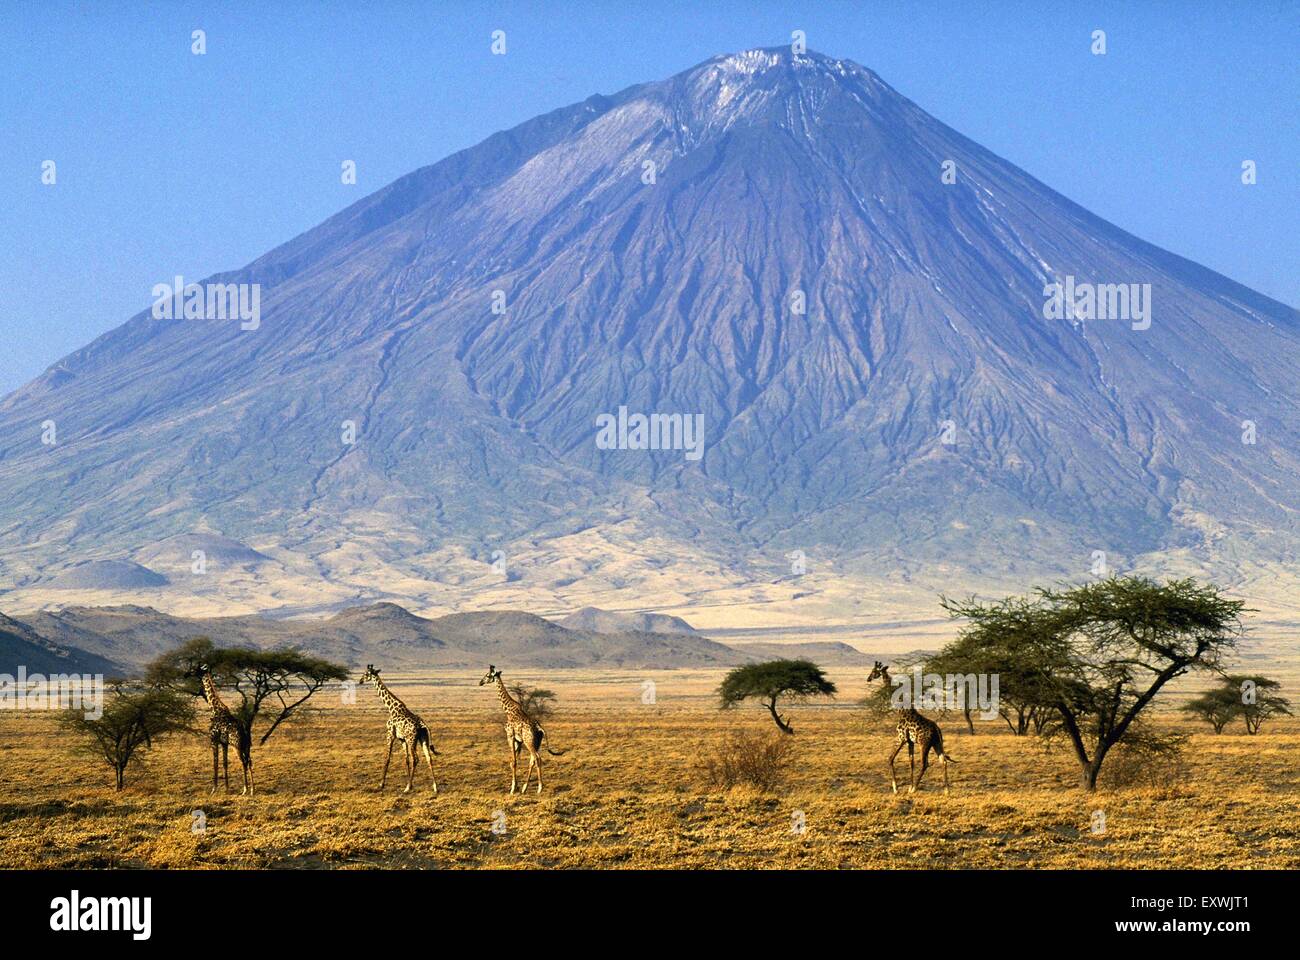 Les Girafes marche dans paysage de savane au pied du volcan Ol Doinyo Lengai, Tanzanie Banque D'Images